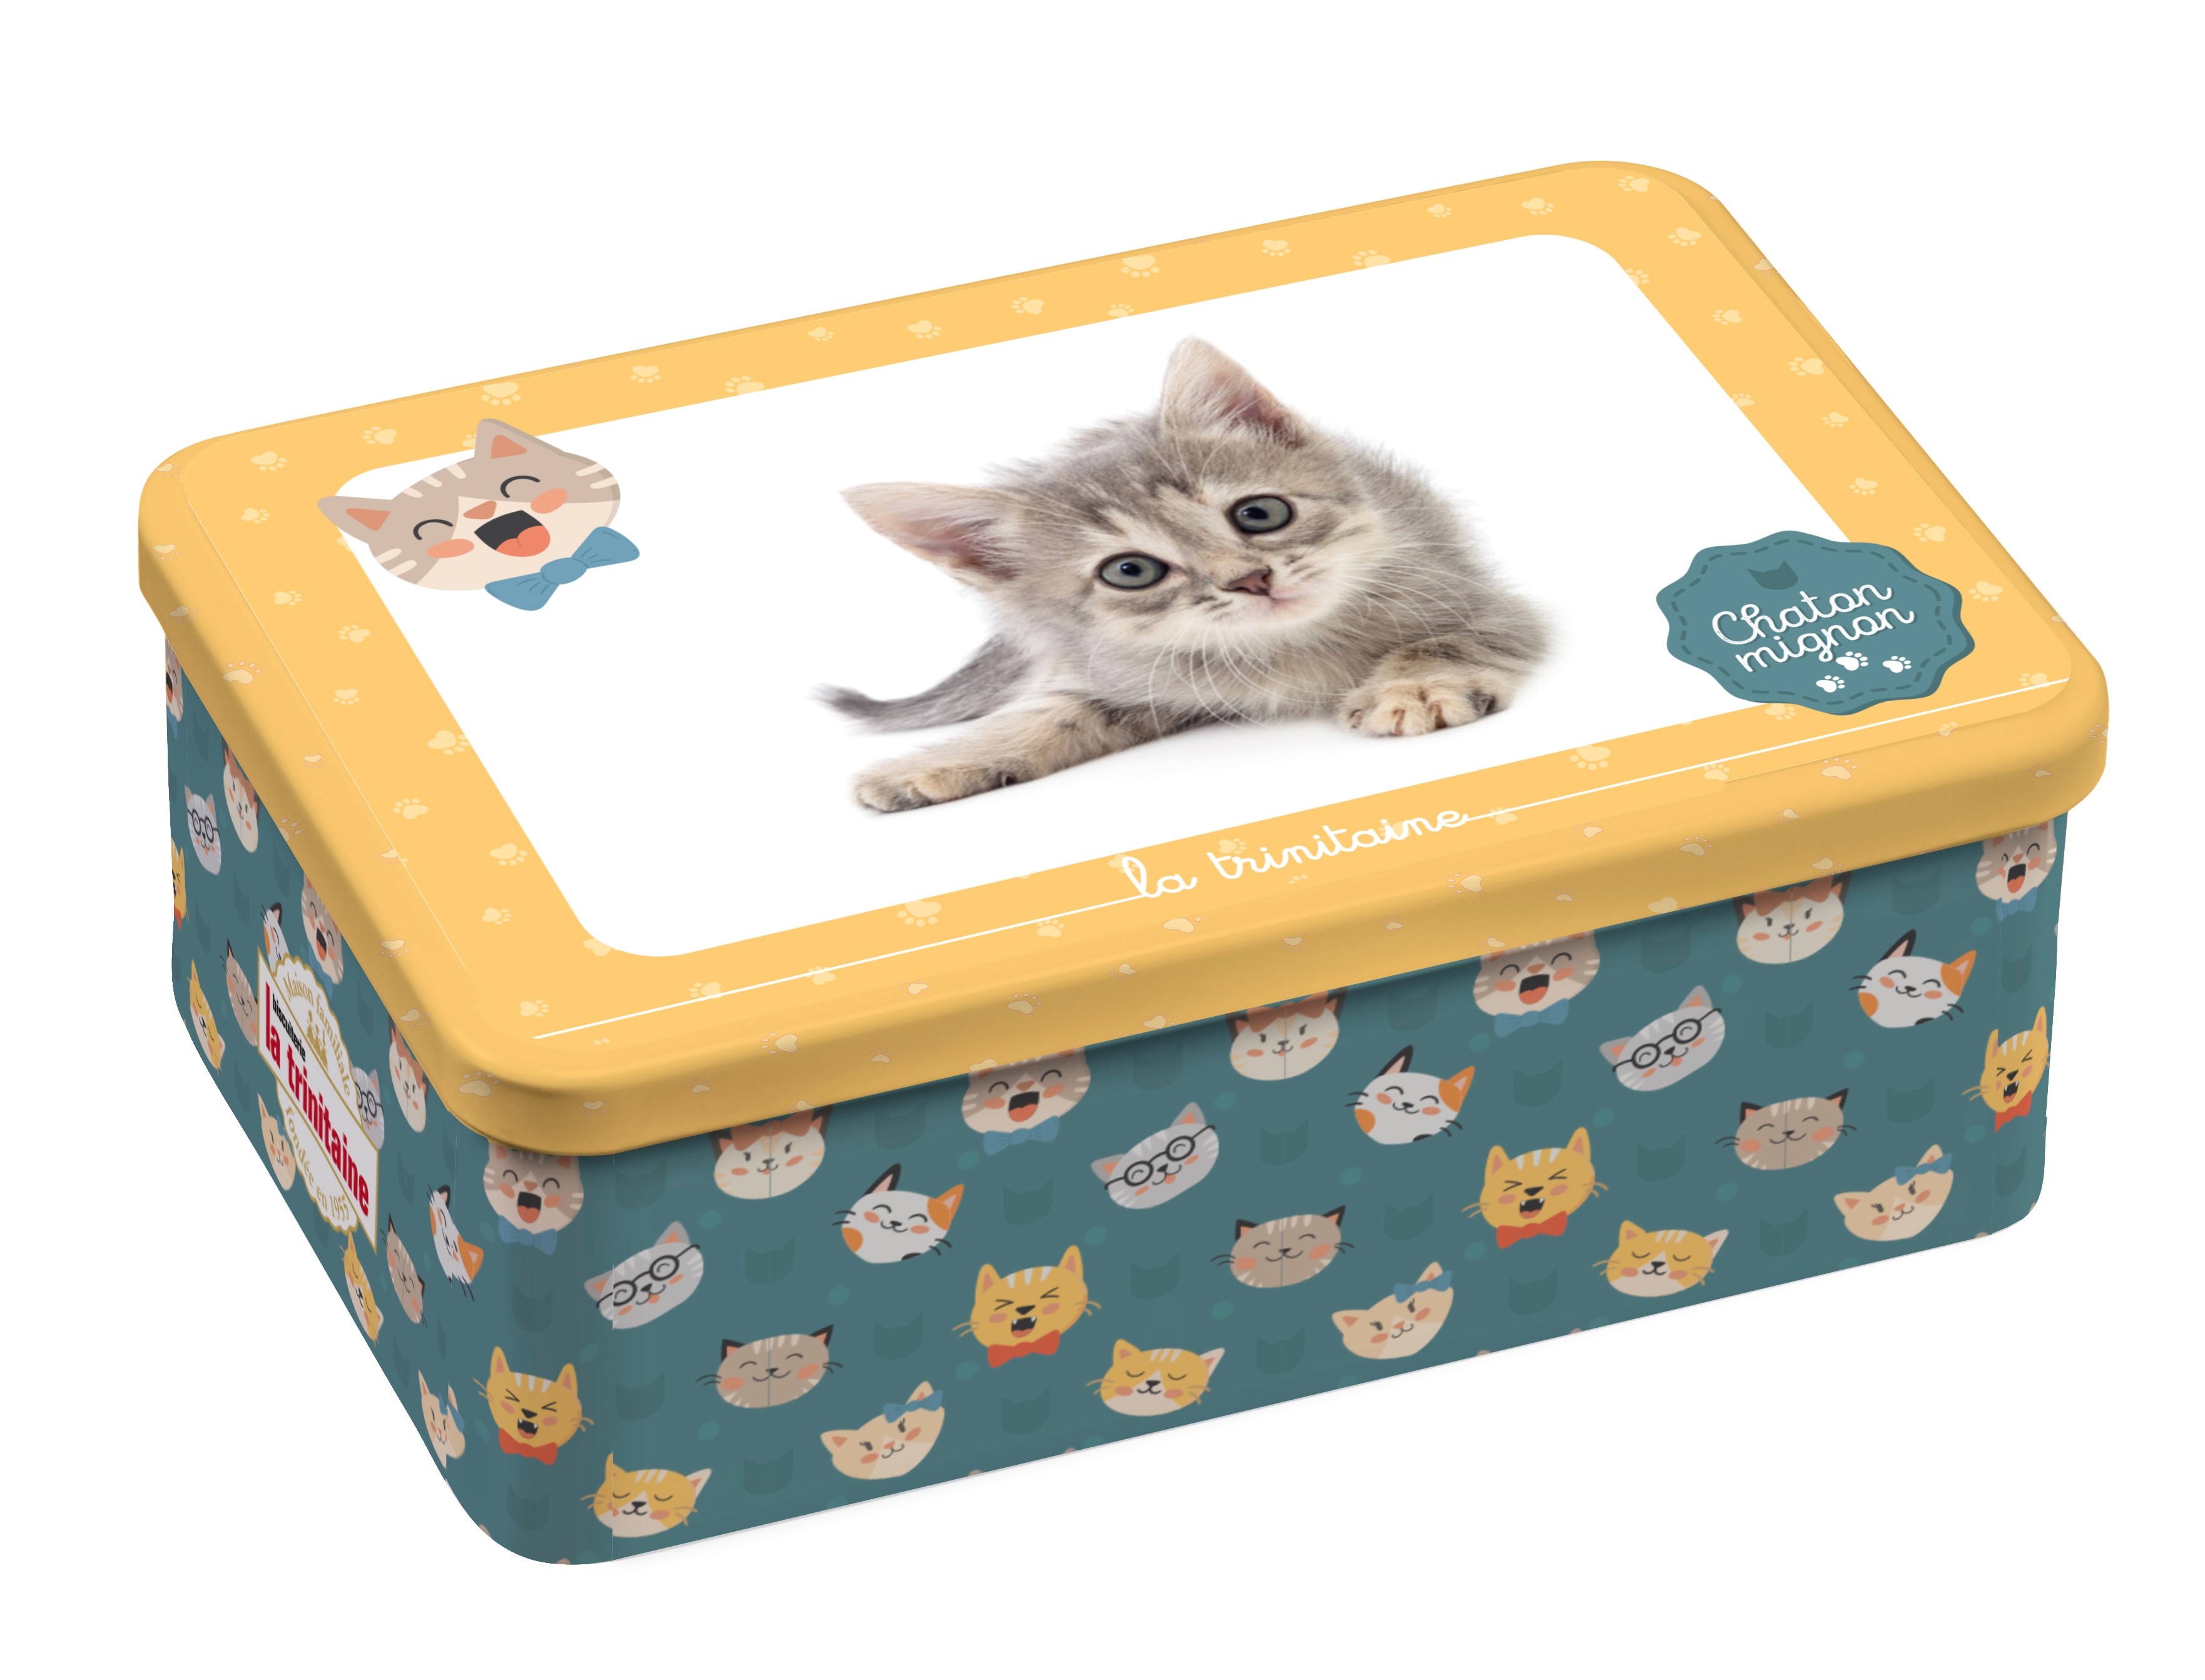 キャット缶 かわいい猫ちゃんが見つめるフレンチクッキー 雑貨通販 ヴィレッジヴァンガード公式通販サイト